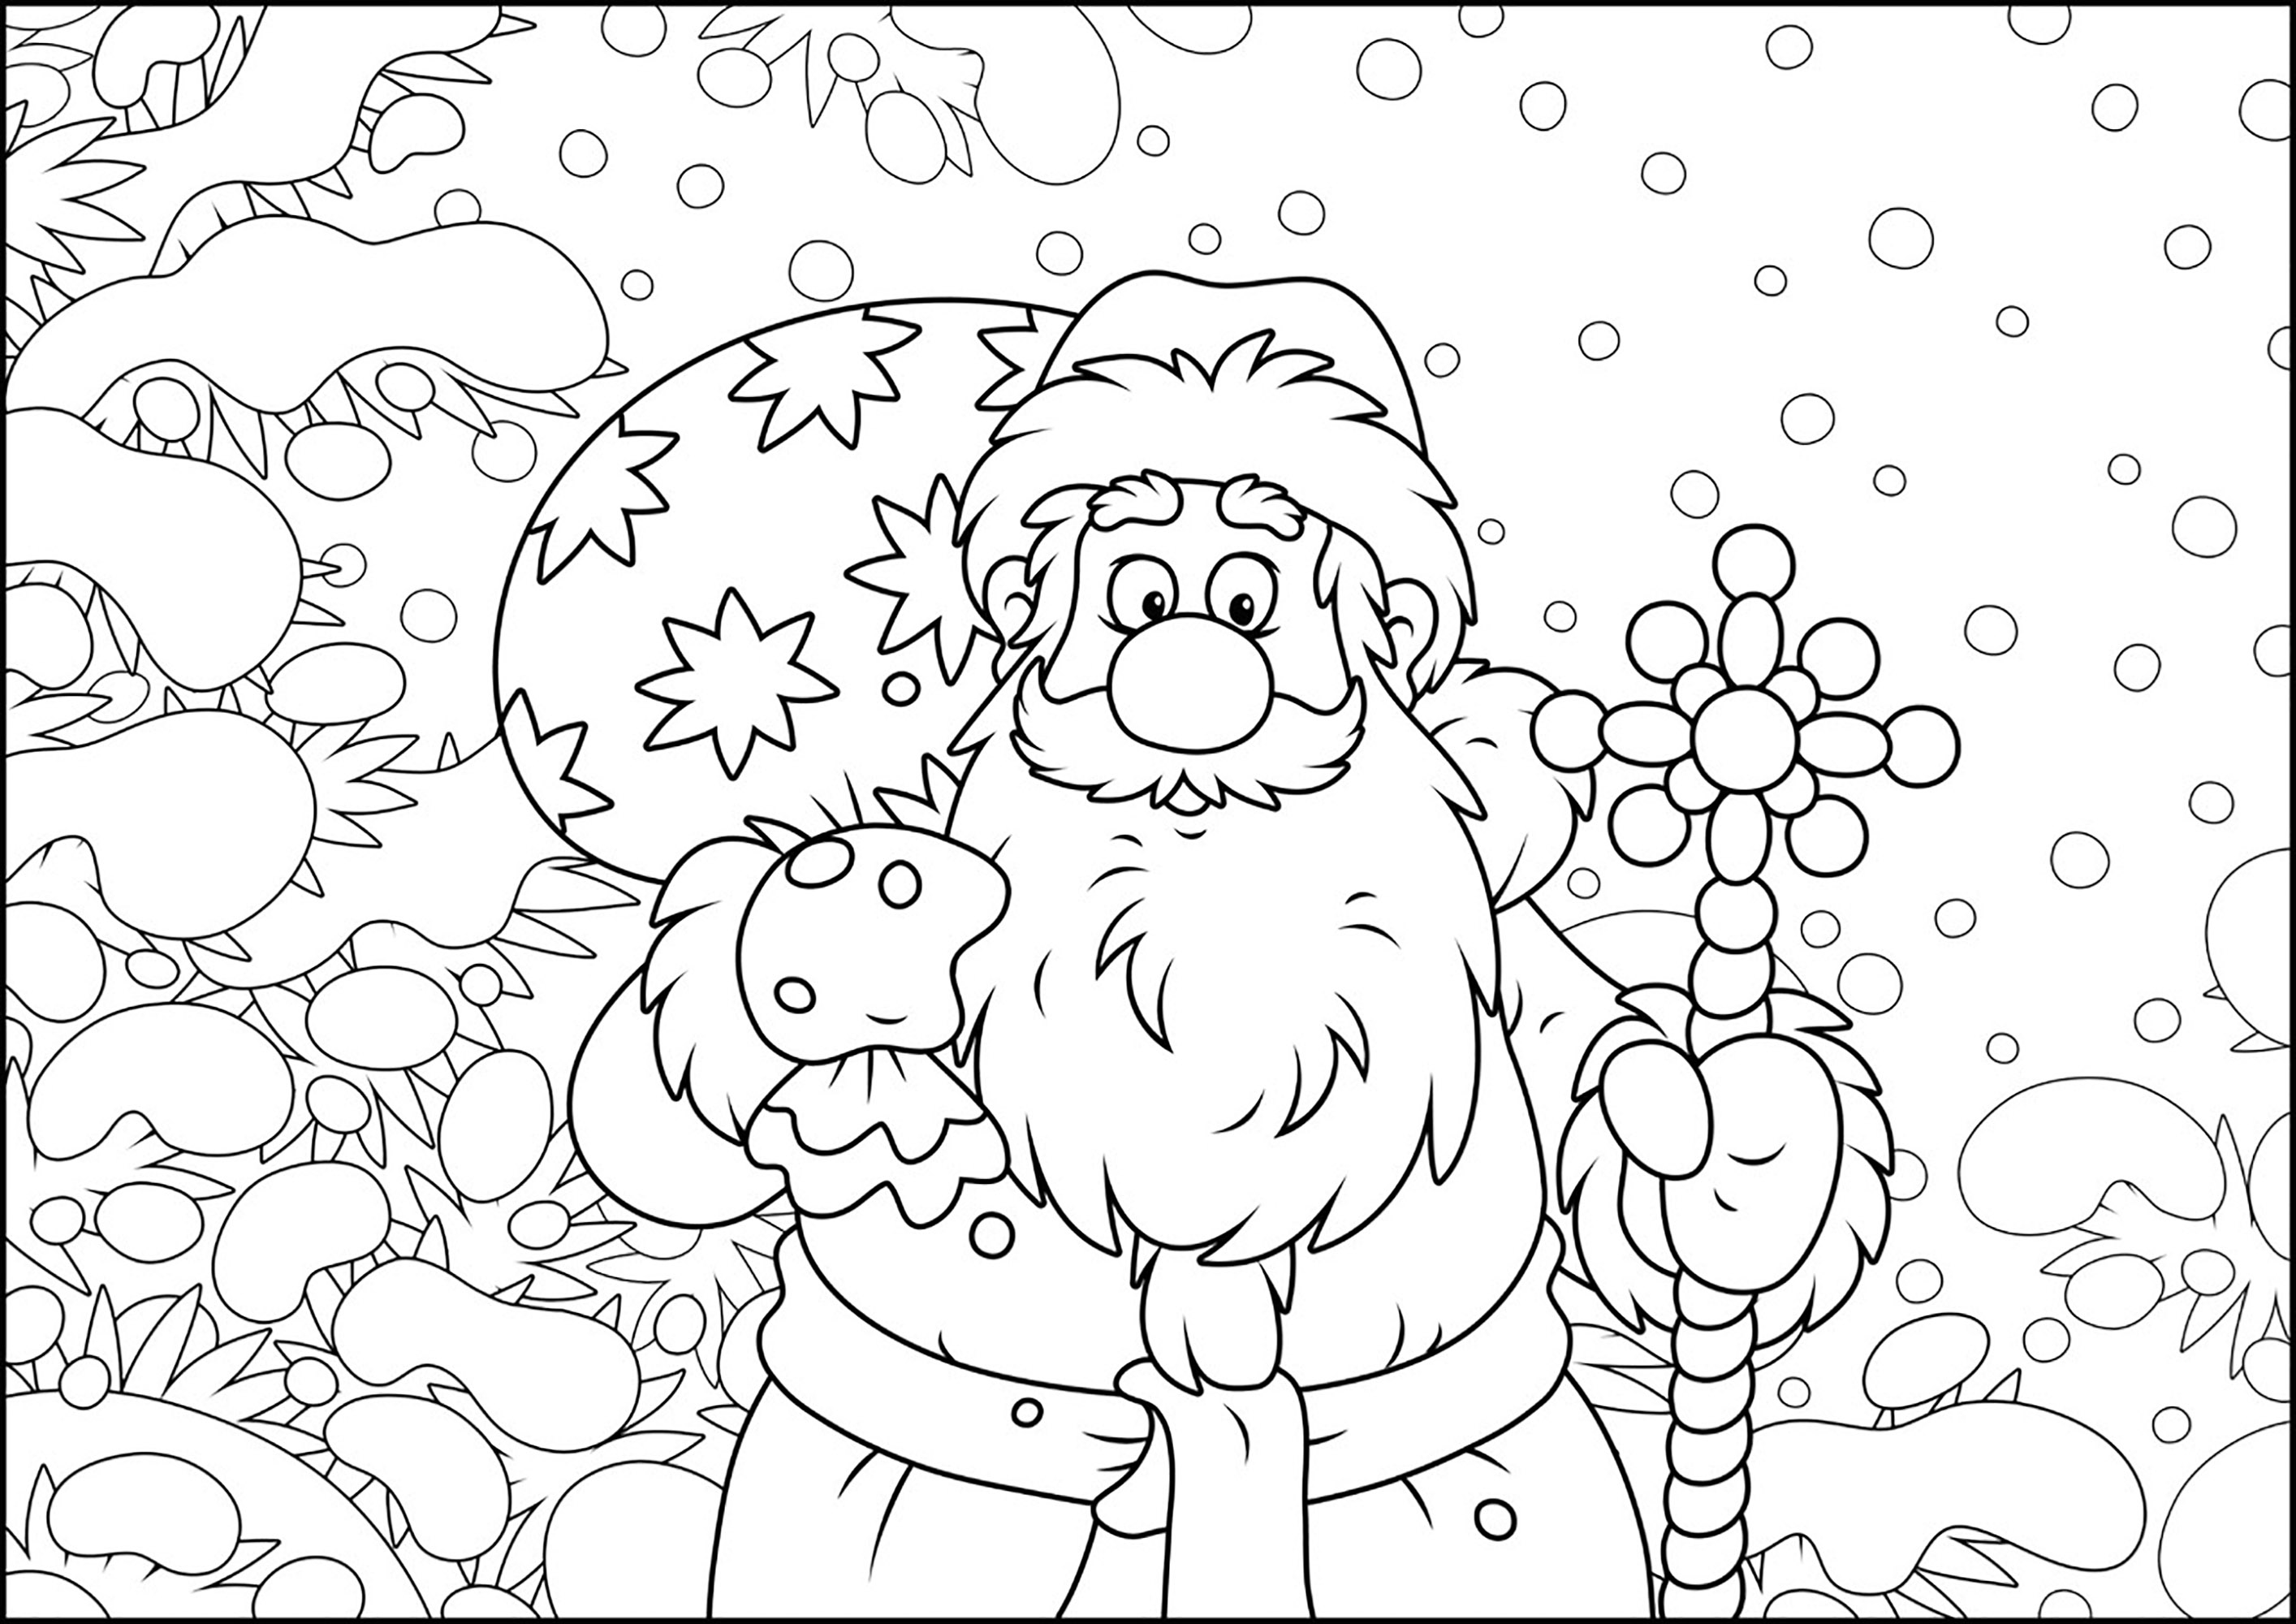 O Pai Natal em modo de desenho animado - Natal - Coloring Pages for Adults